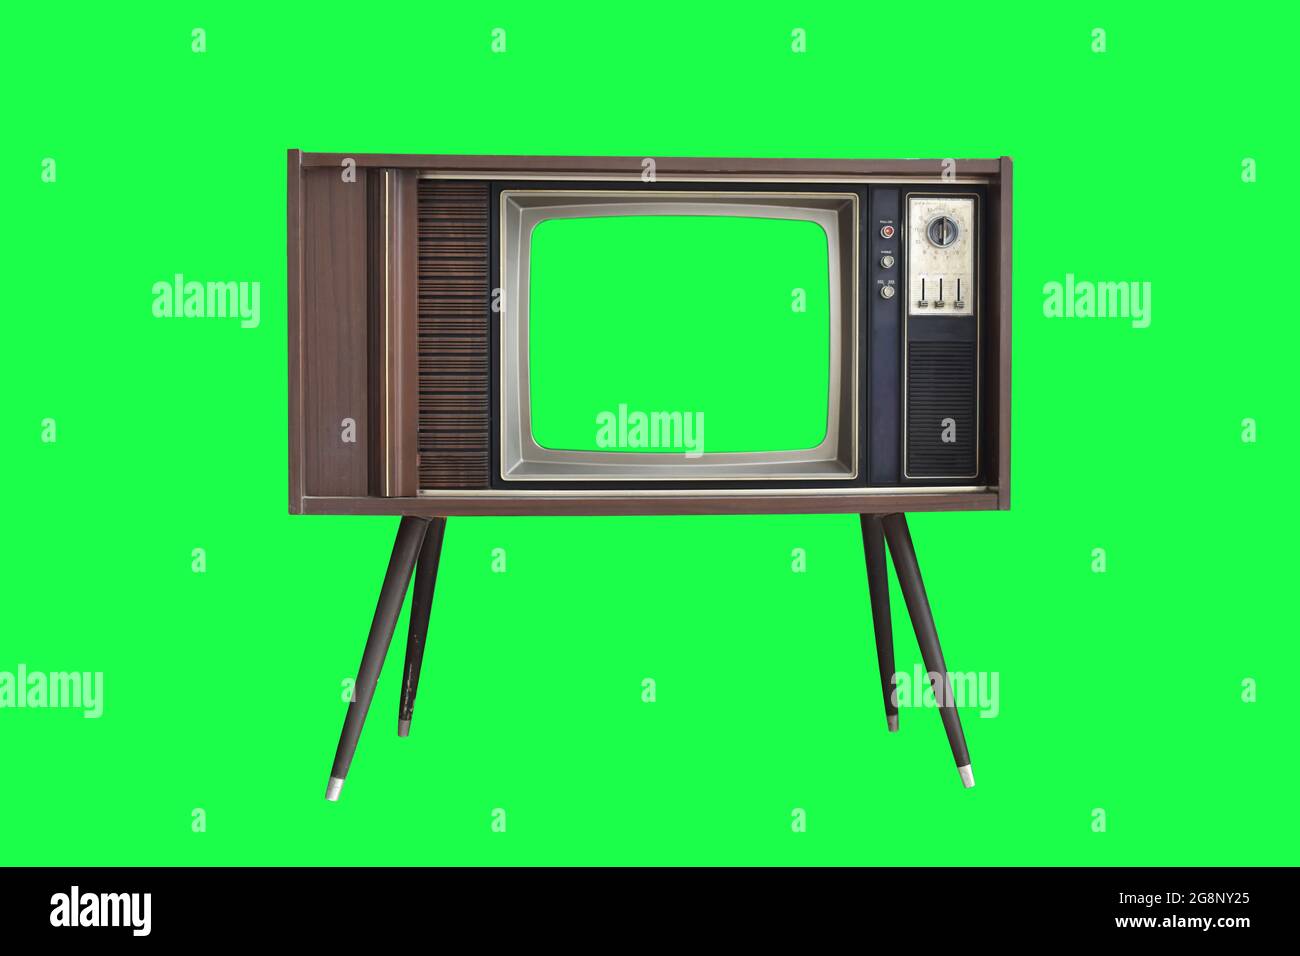 Một chiếc TV cổ điển với màn hình xanh lá cây cách điệu trên nền xanh sẽ đem lại cho không gian của bạn vẻ đẹp cổ điển và quý phái. Hãy xem ngay để tìm hiểu thêm!